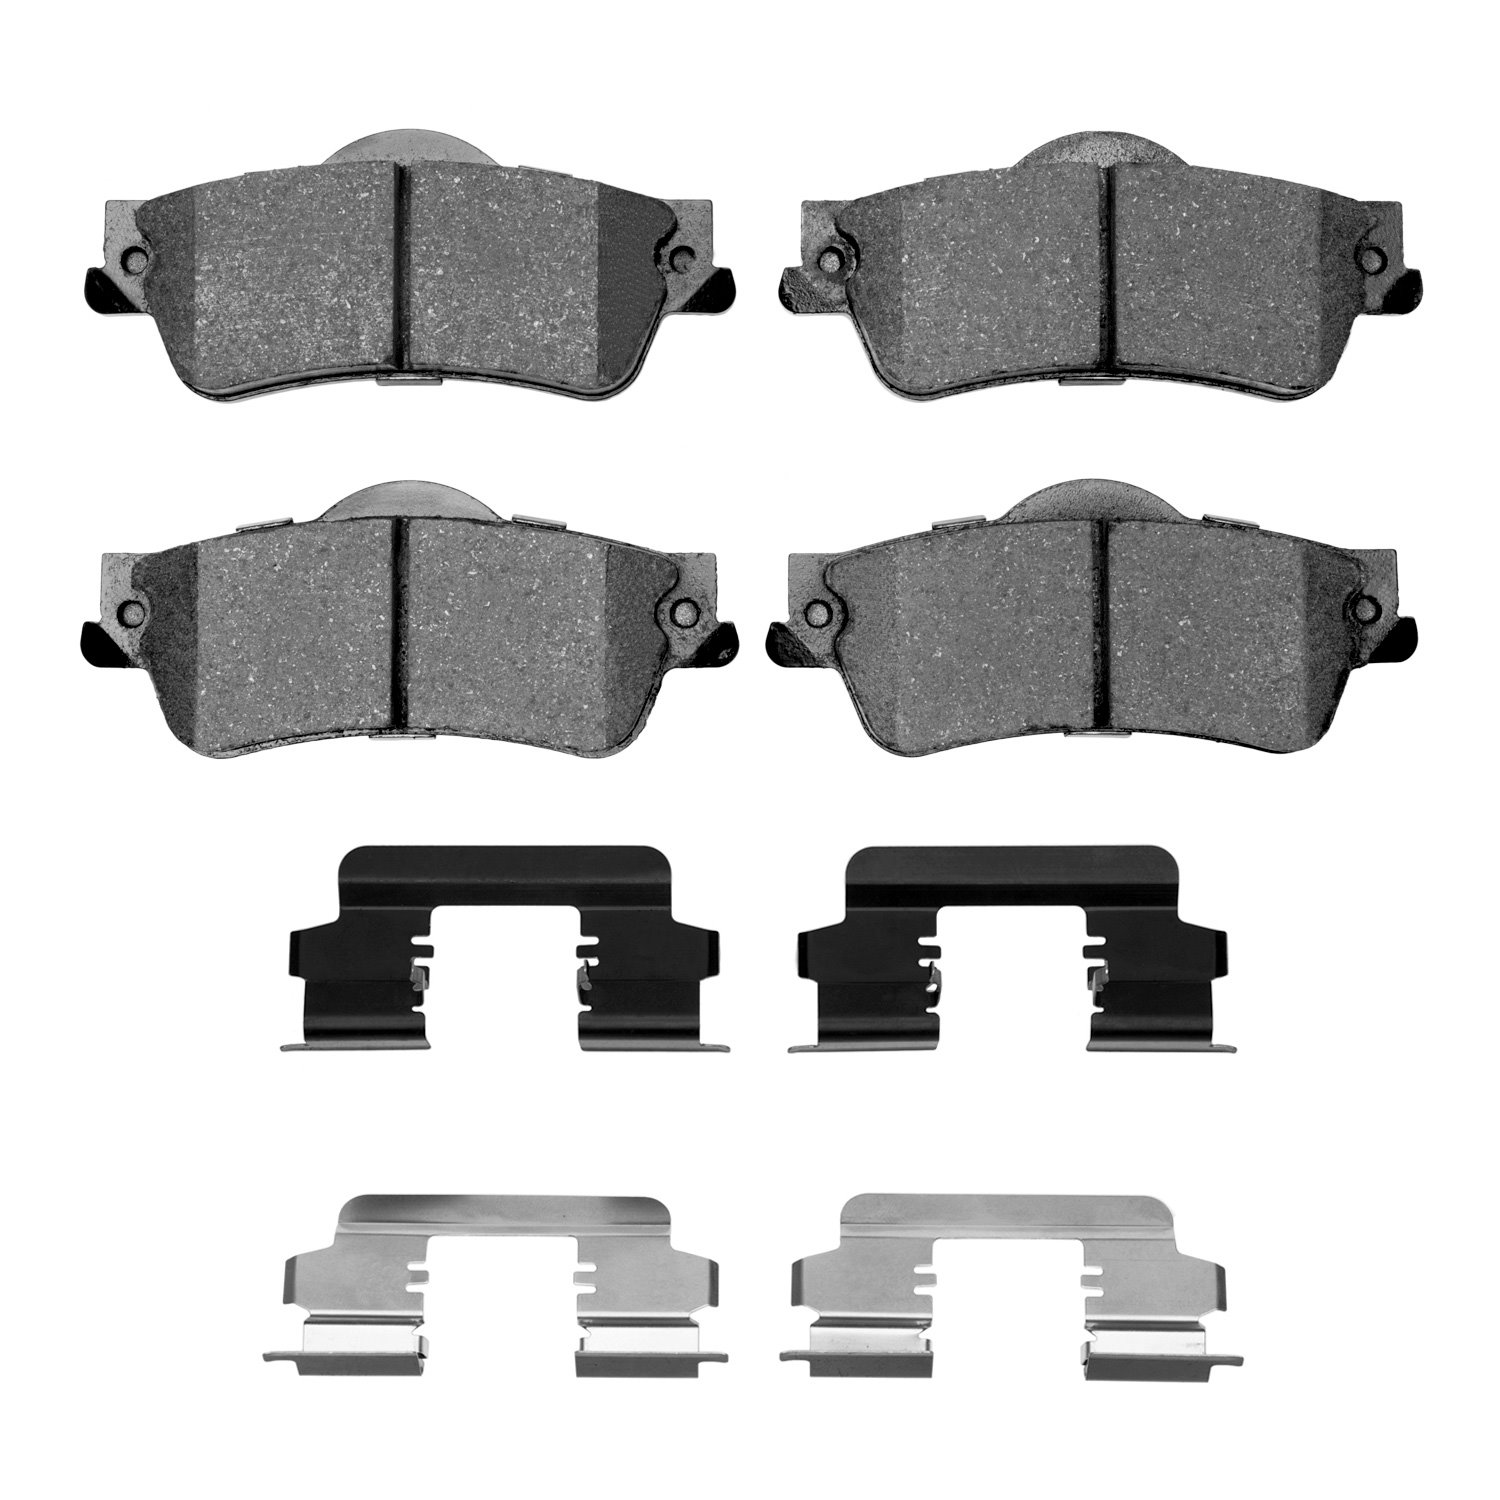 1310-1352-01 3000-Series Ceramic Brake Pads & Hardware Kit, 2008-2017 GM, Position: Rear